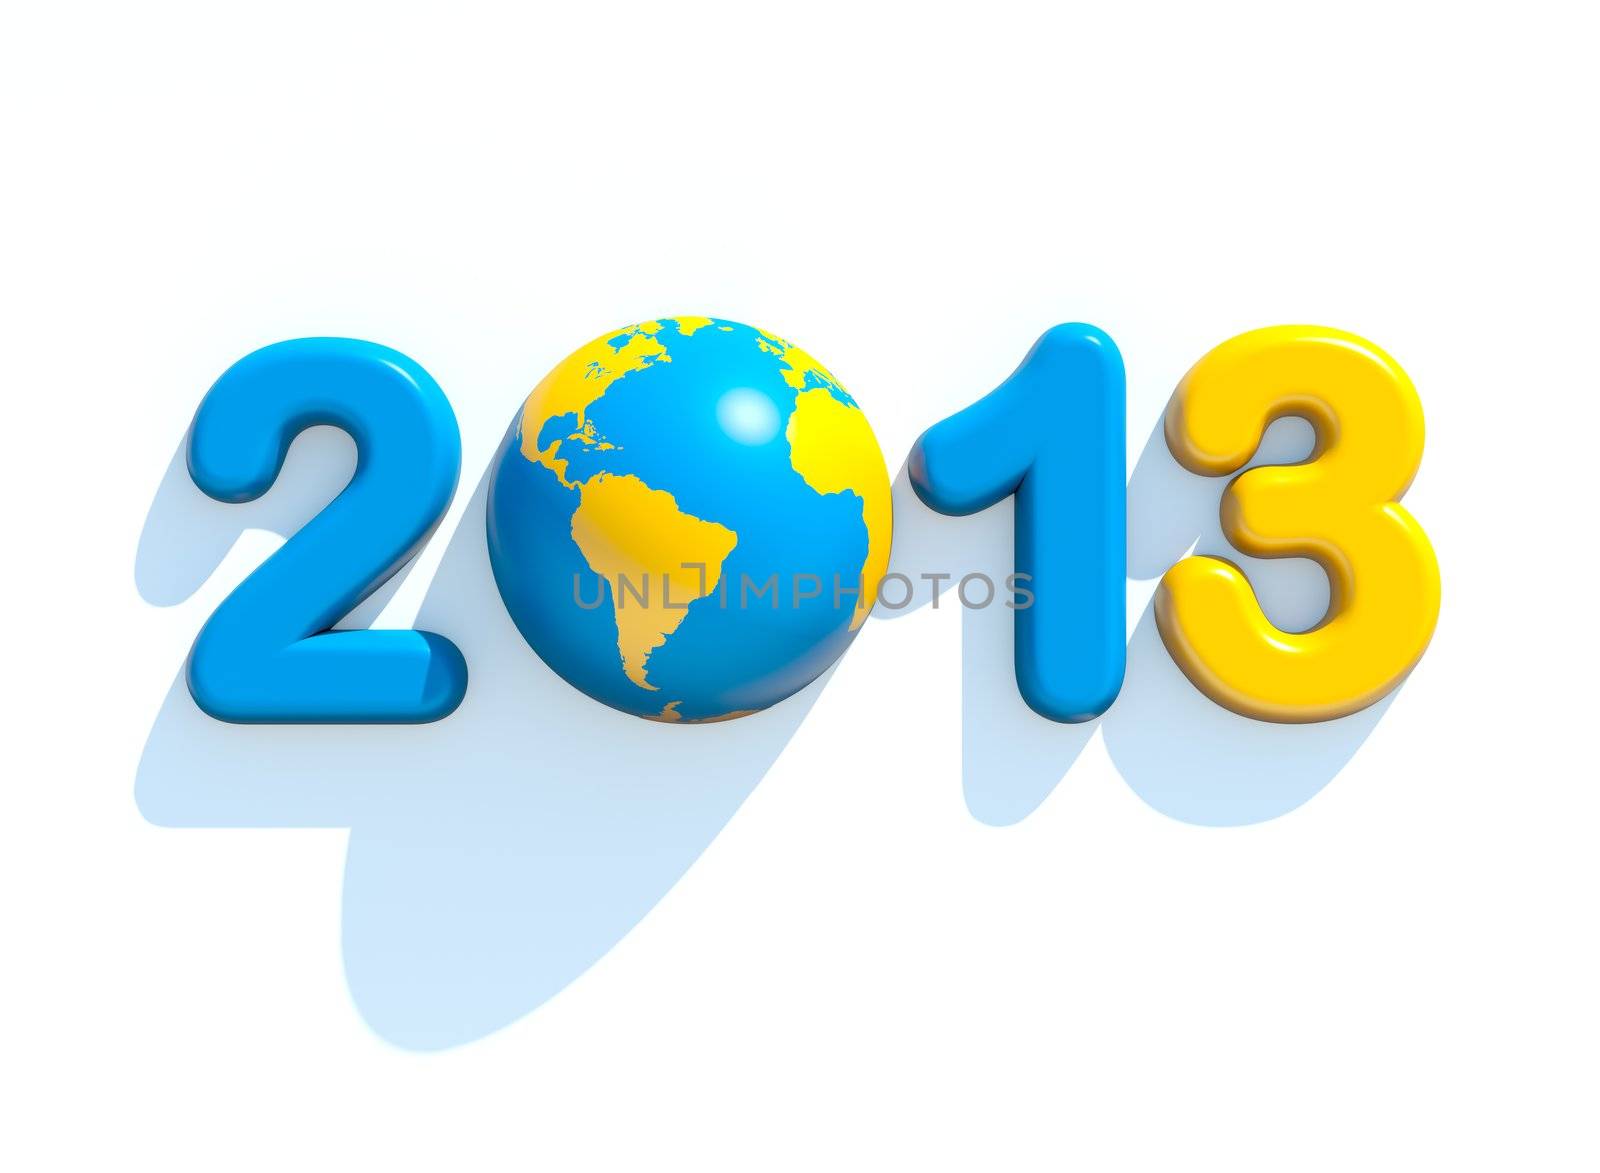 New year 2013 by chrisroll